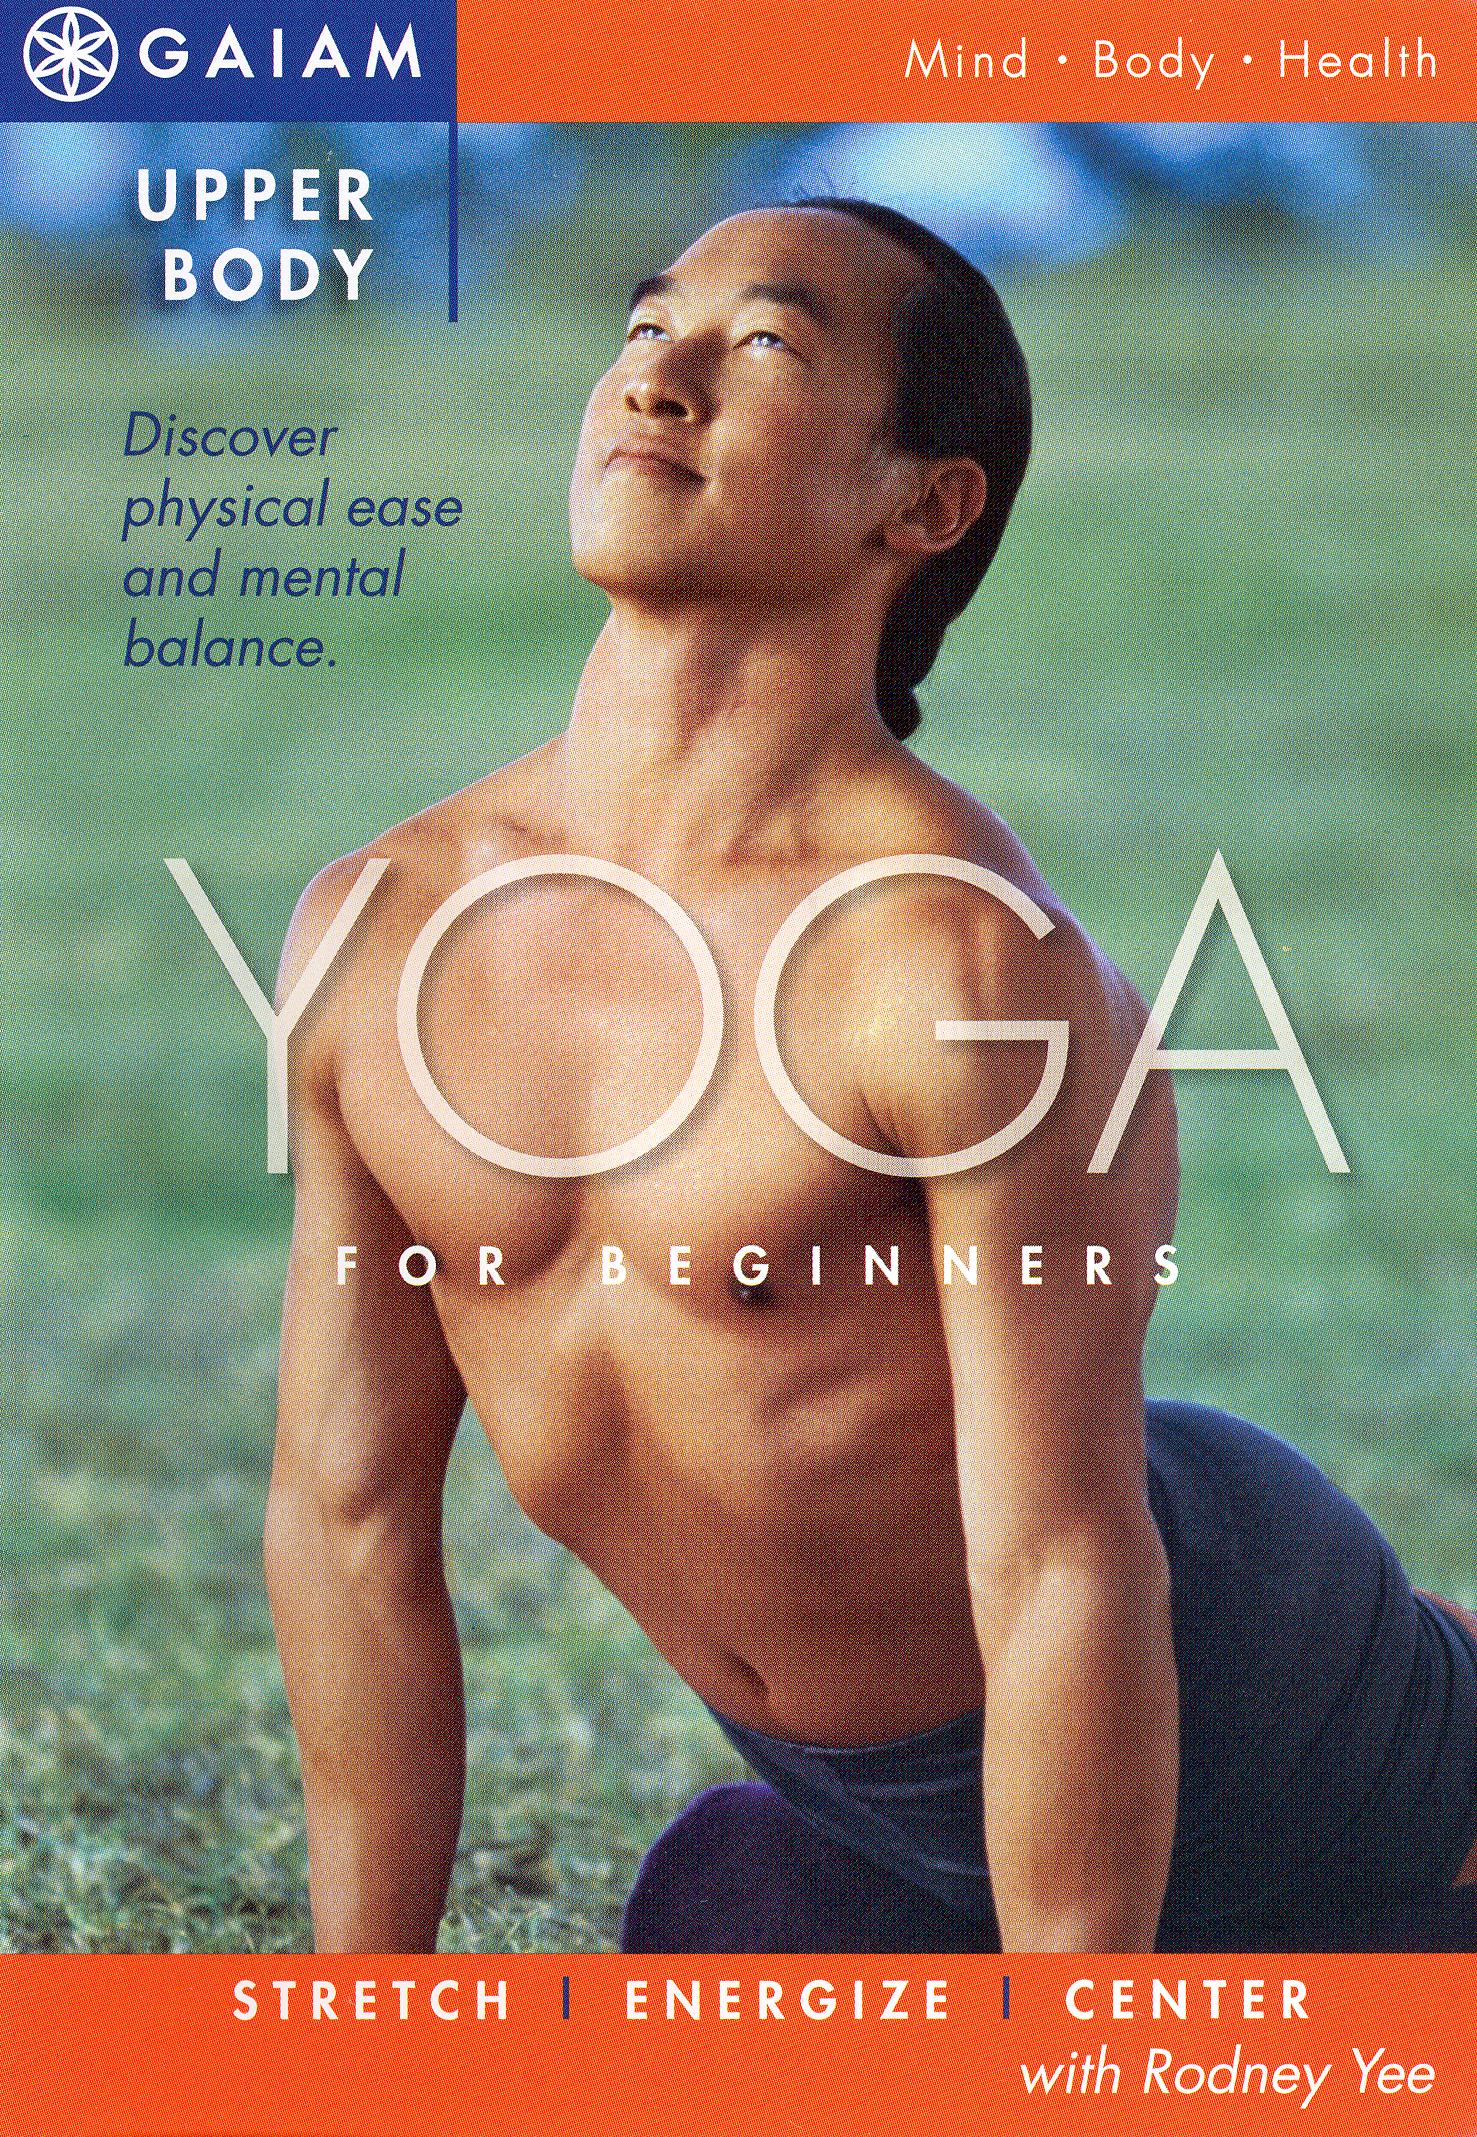 Rodney Yee: Upper Body Yoga for Beginners [DVD] - Best Buy